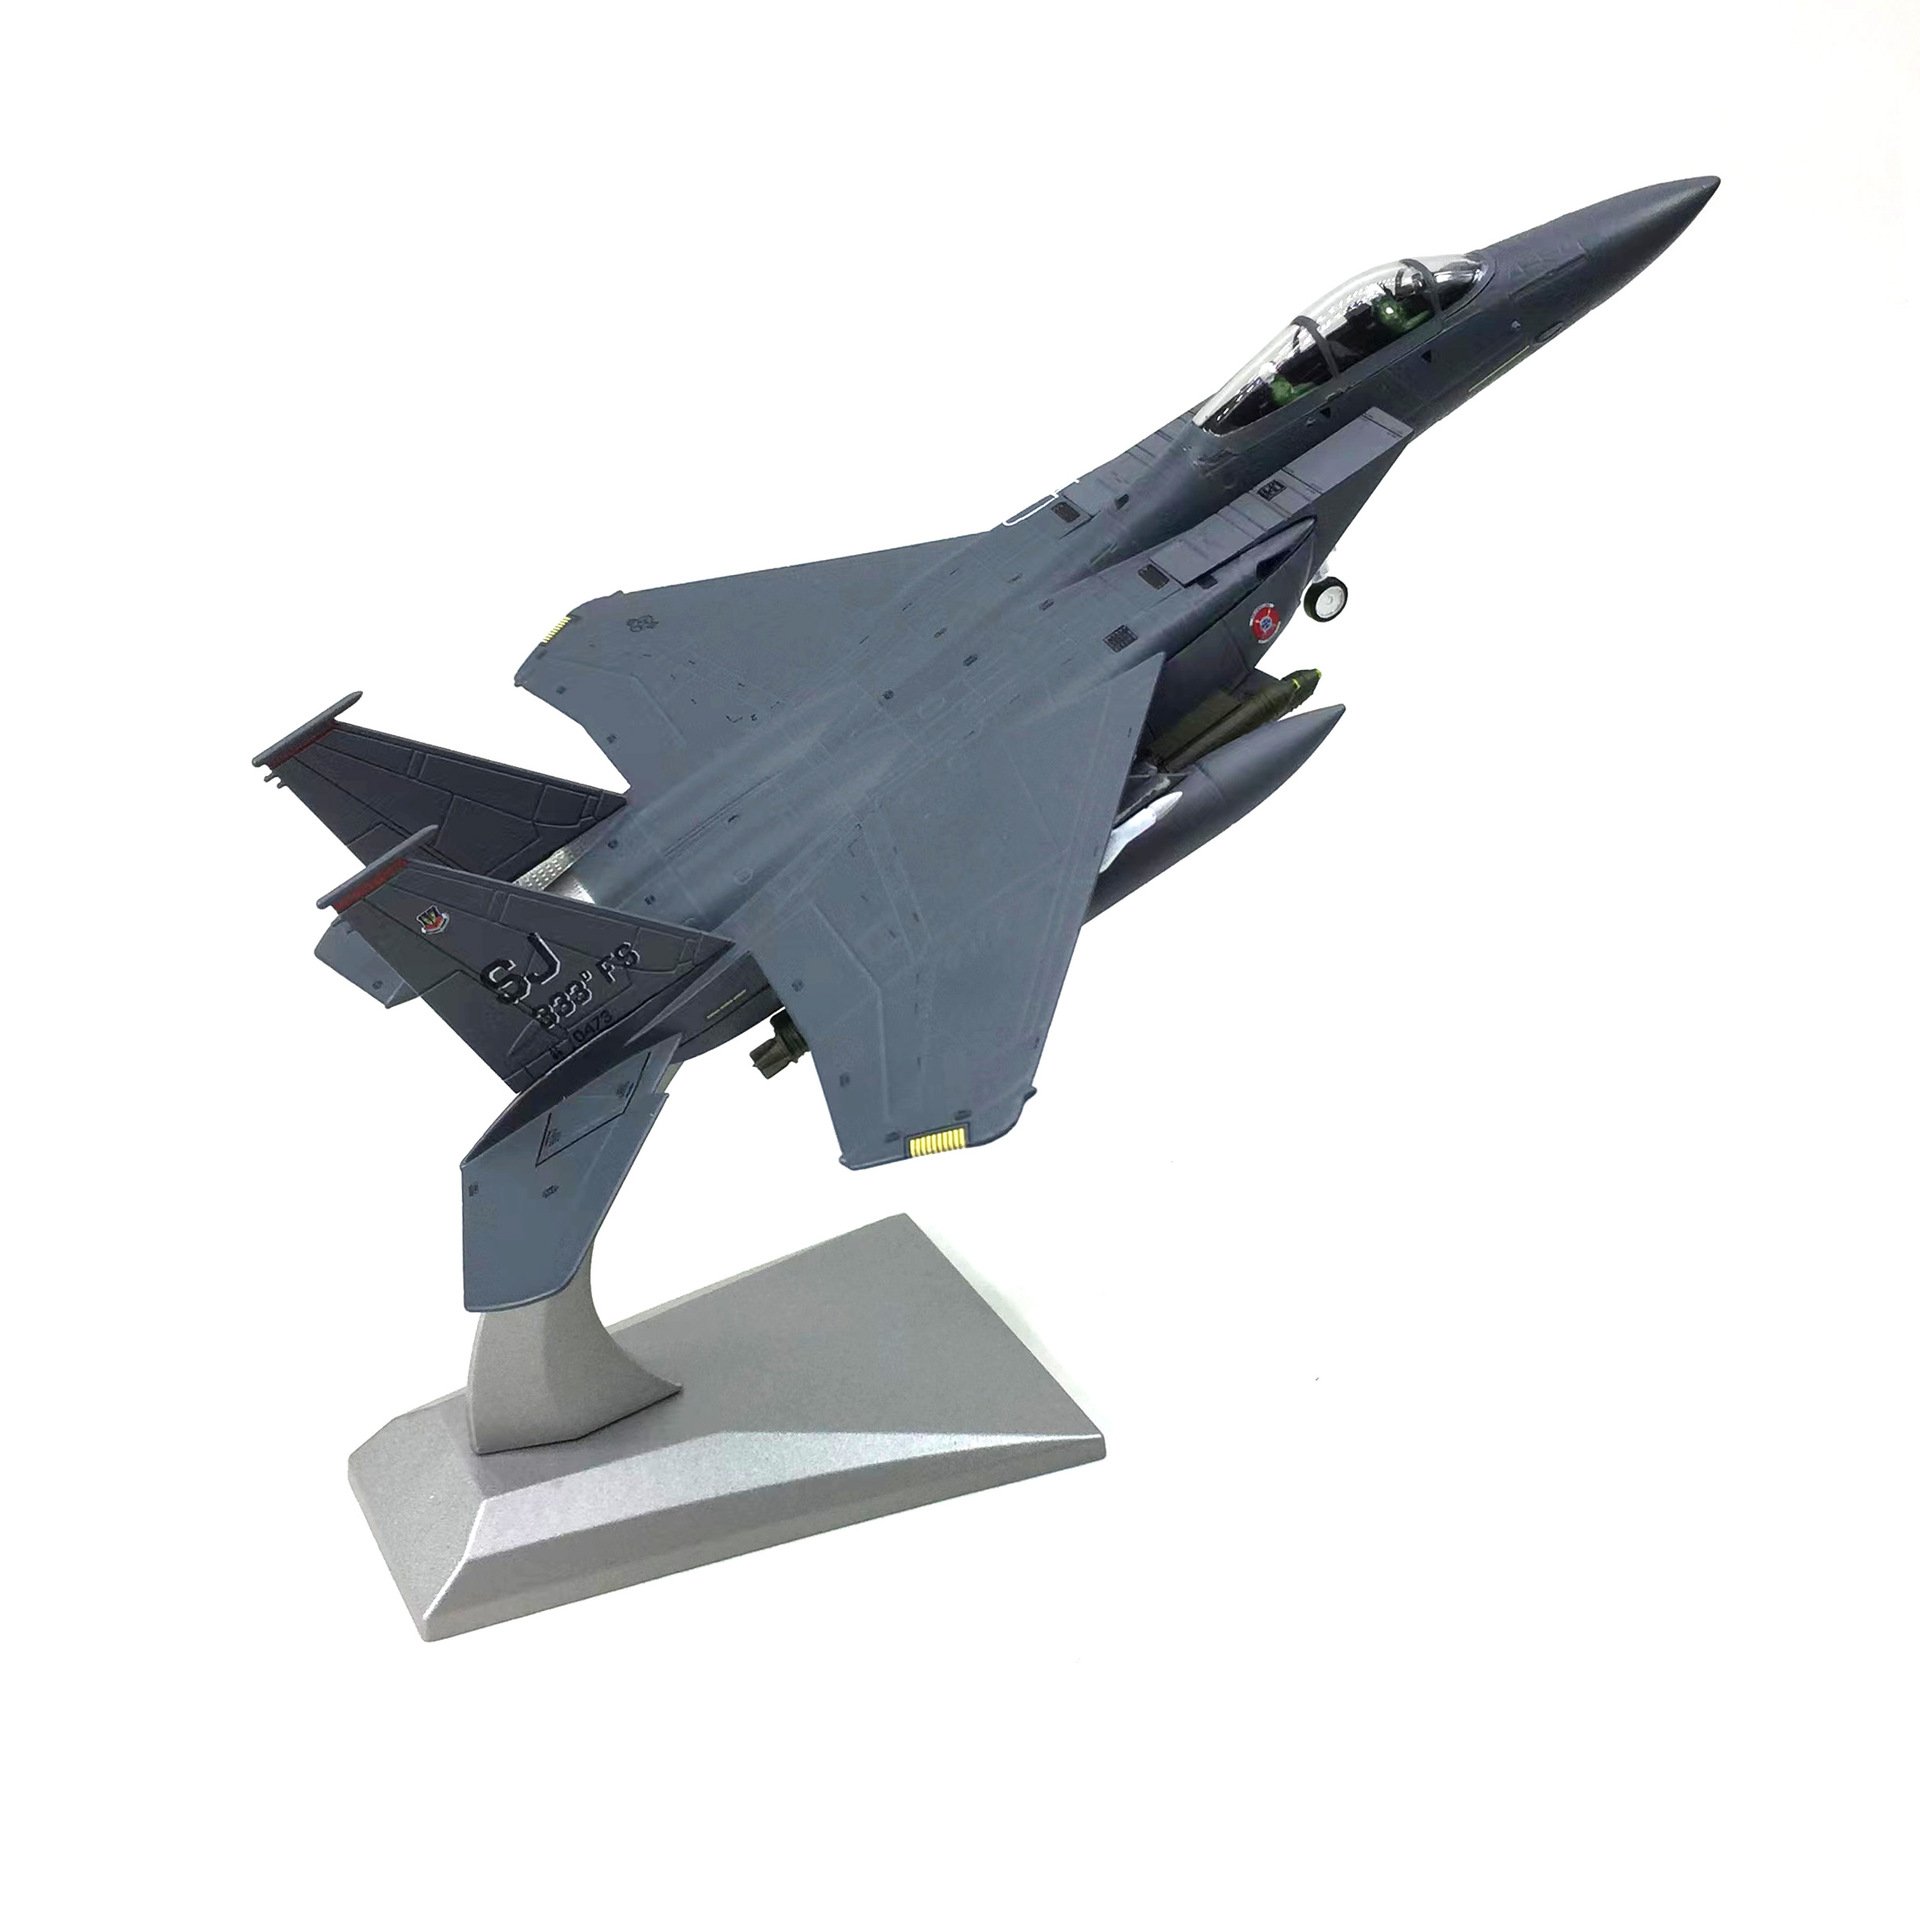  Mô hình máy bay chiến đấu USA F-15E SJ 333 FS tỉ lệ 1:100 Ns models MBQS010 